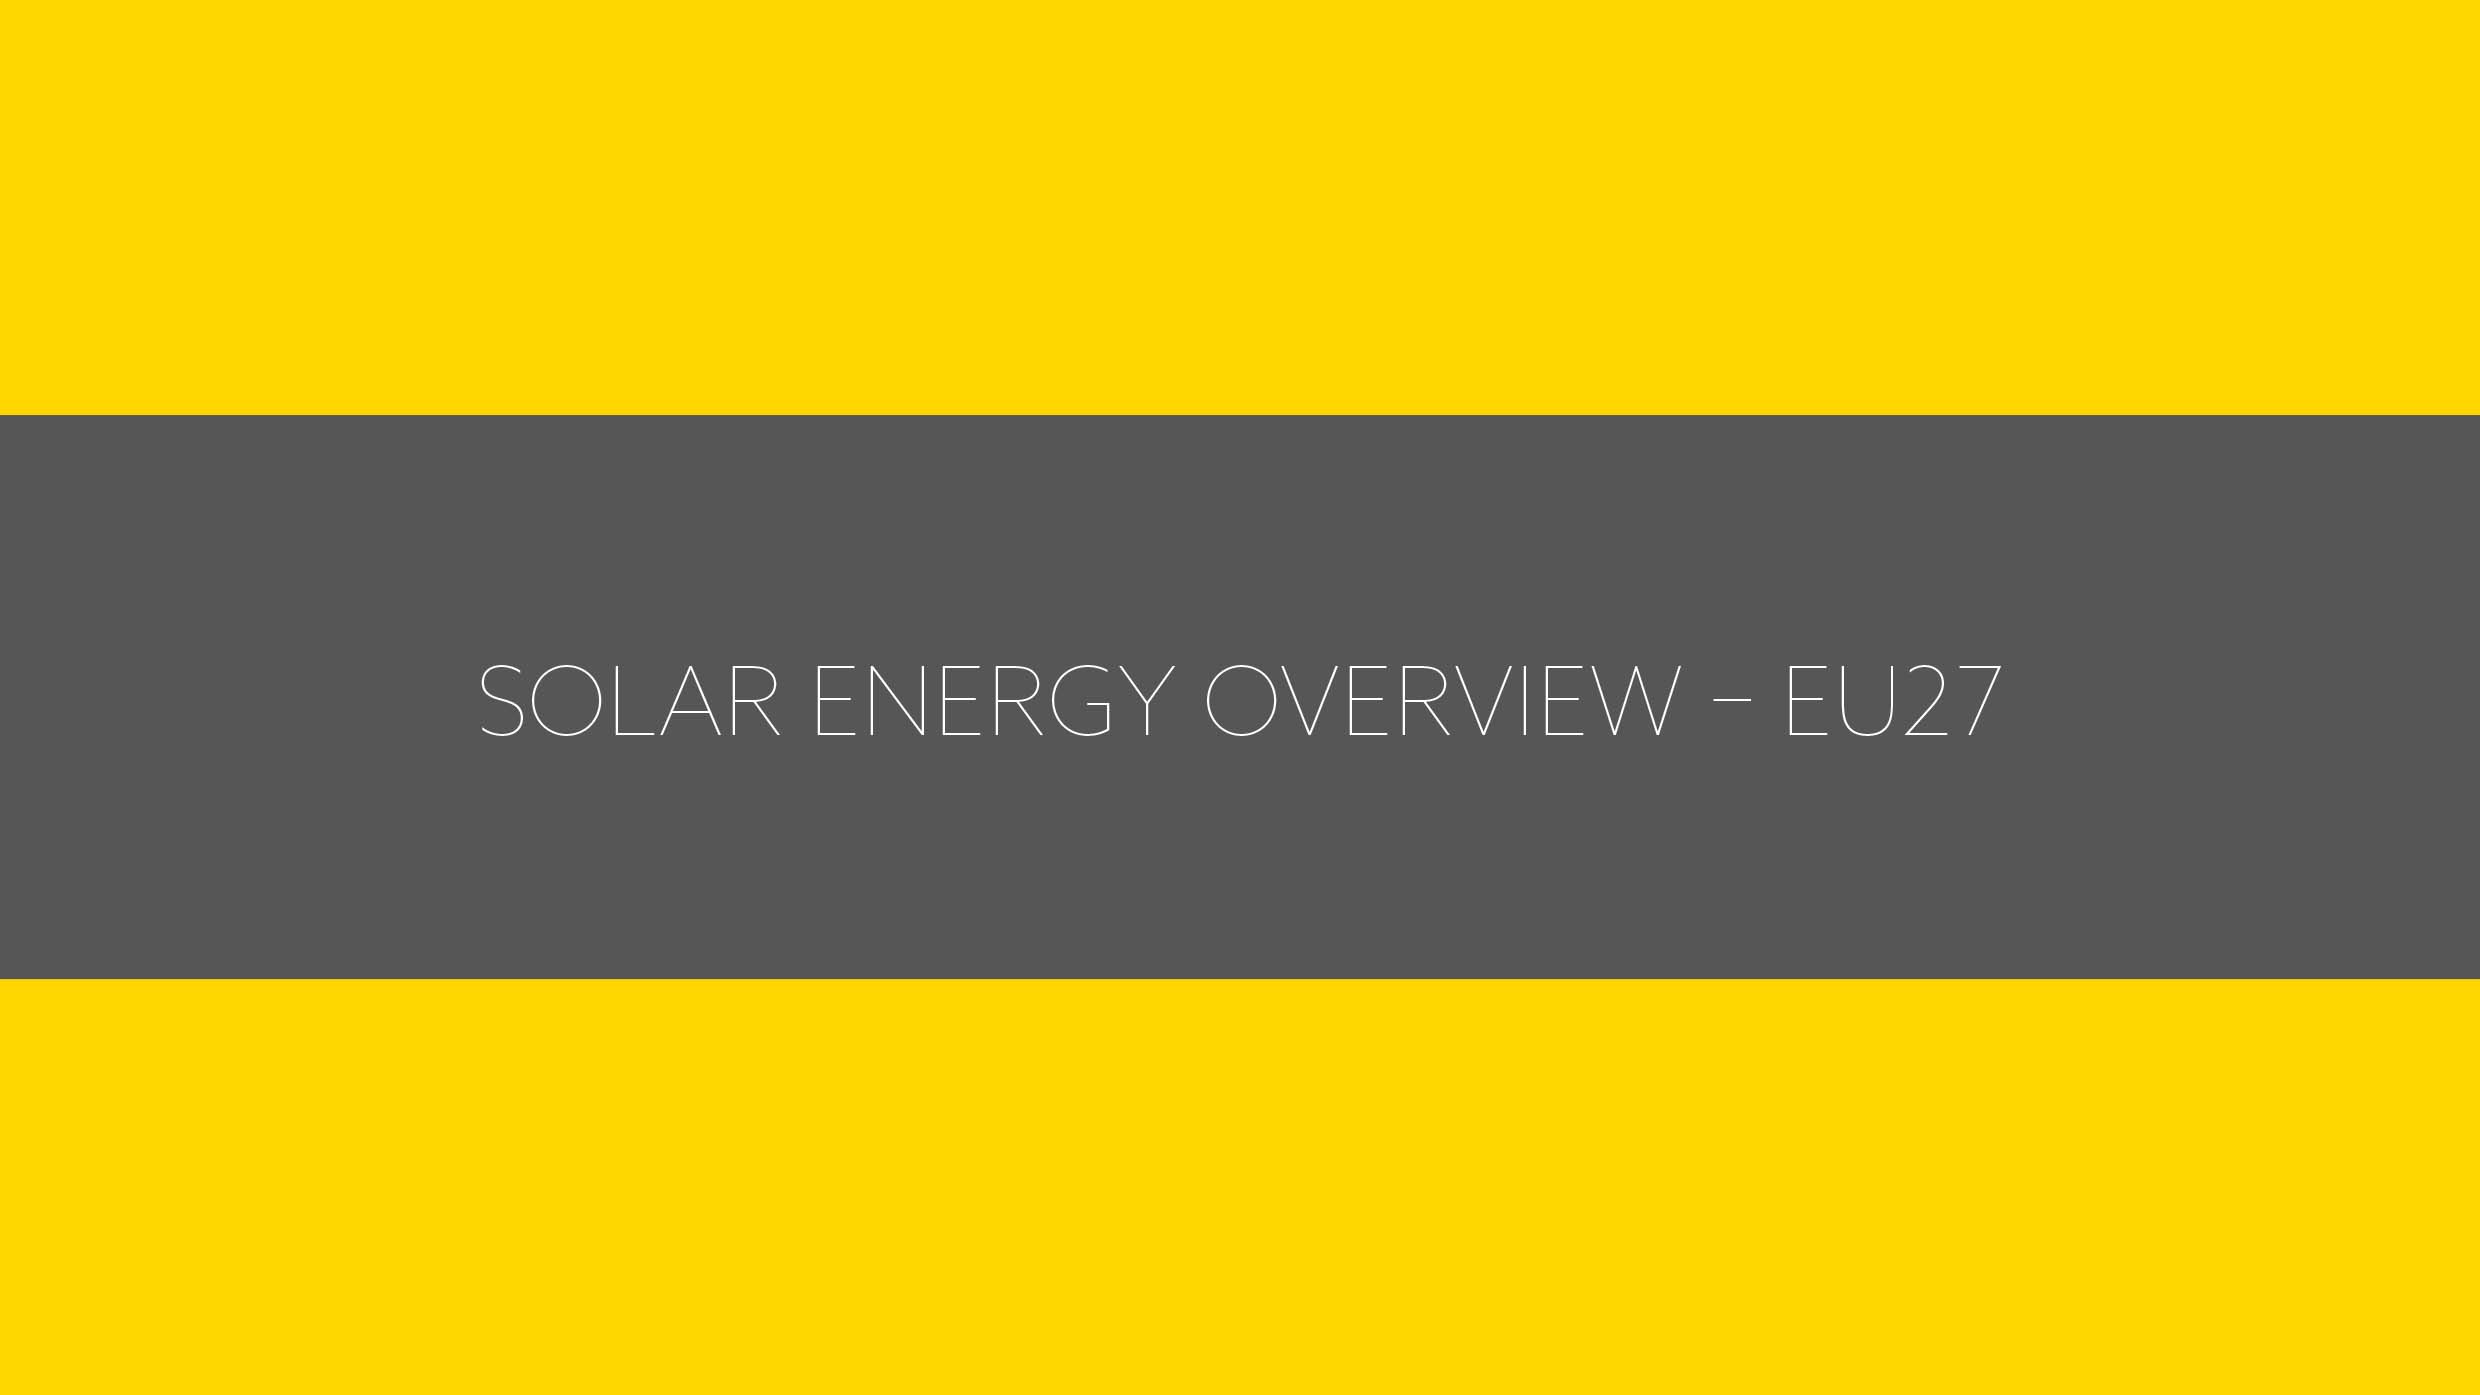 Solar energy overview – EU27 omslagsbild.